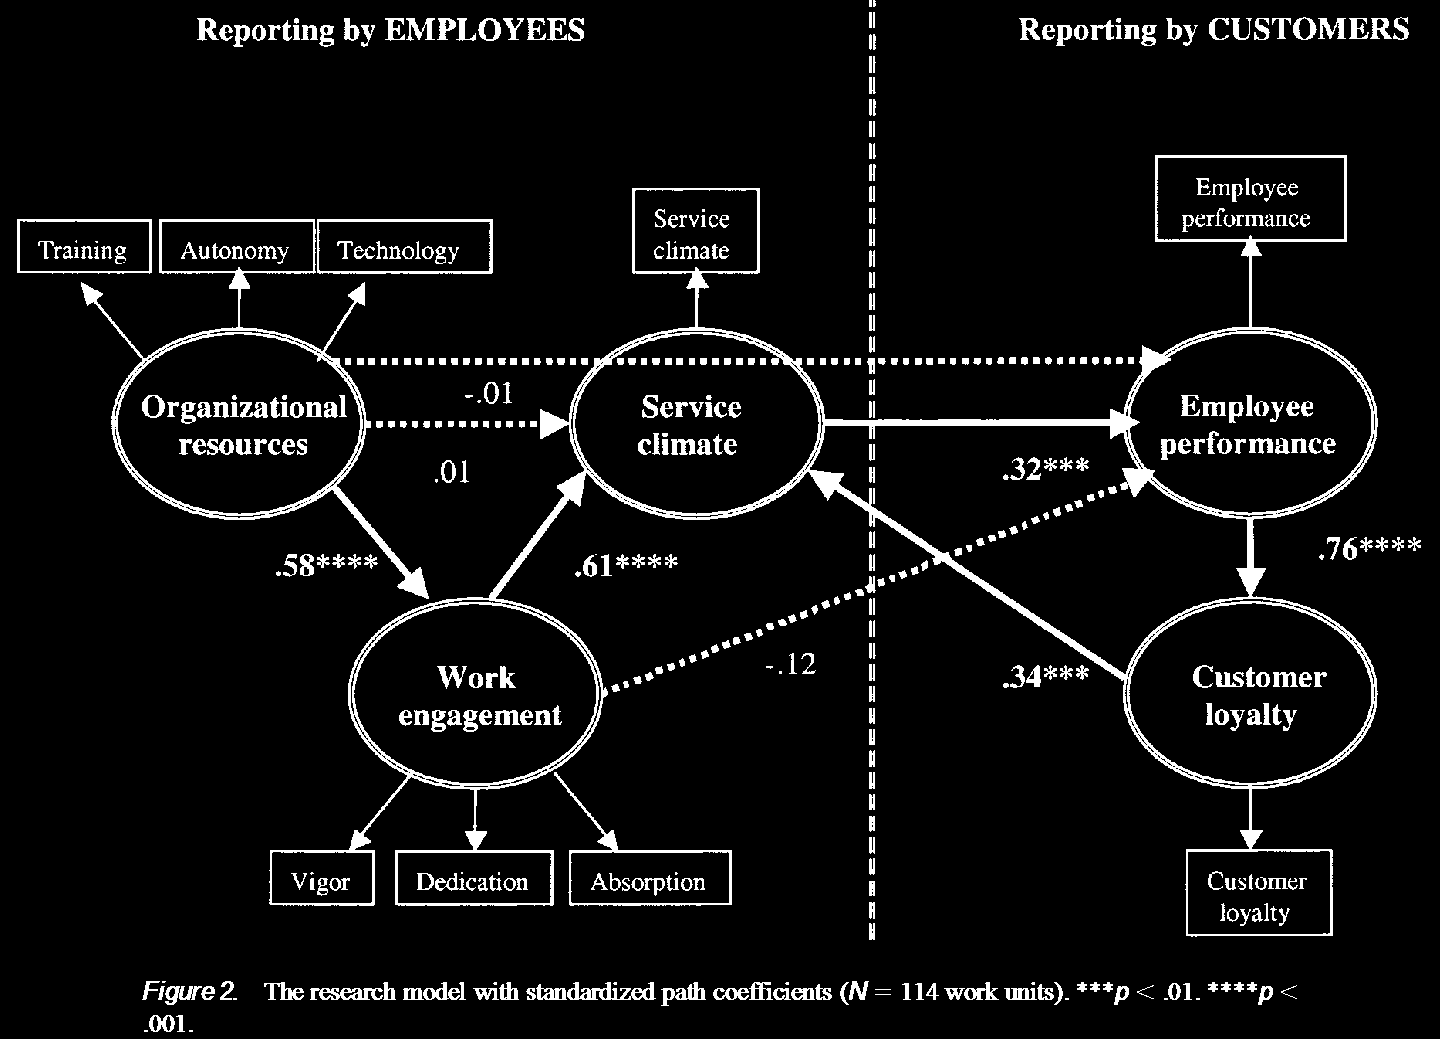 Antezedenzen und Konsequenzen des Dienstleistungsklimas S. 1223 in Salanova, M., Agut, S., & Peiró, J. M. (2005).